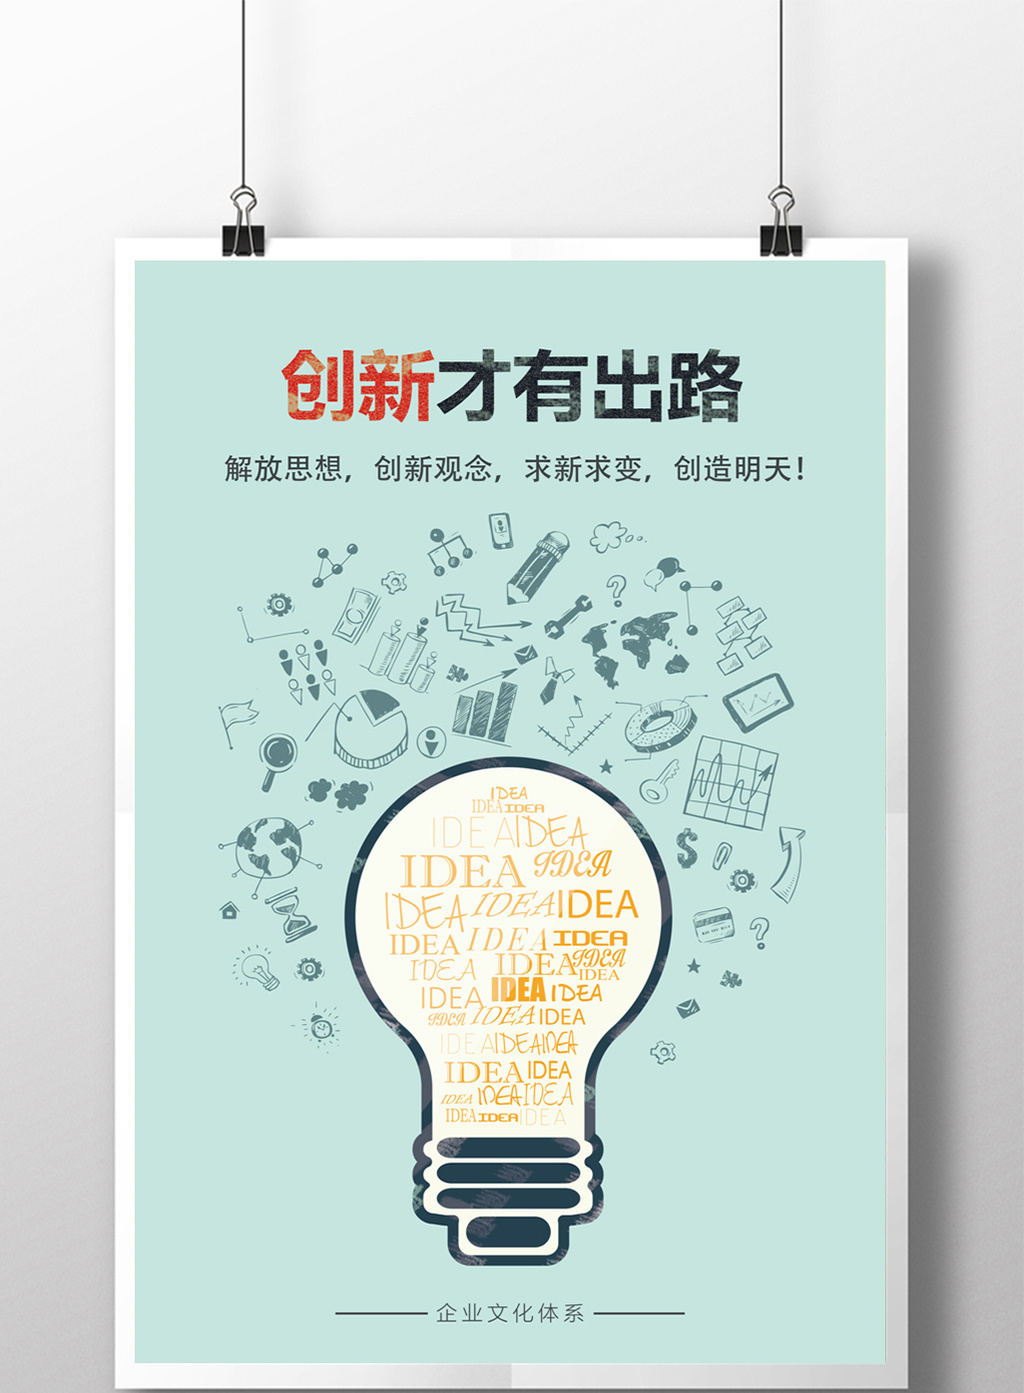 企业文化之创新海报单页展板高清psd图片设计素材免费